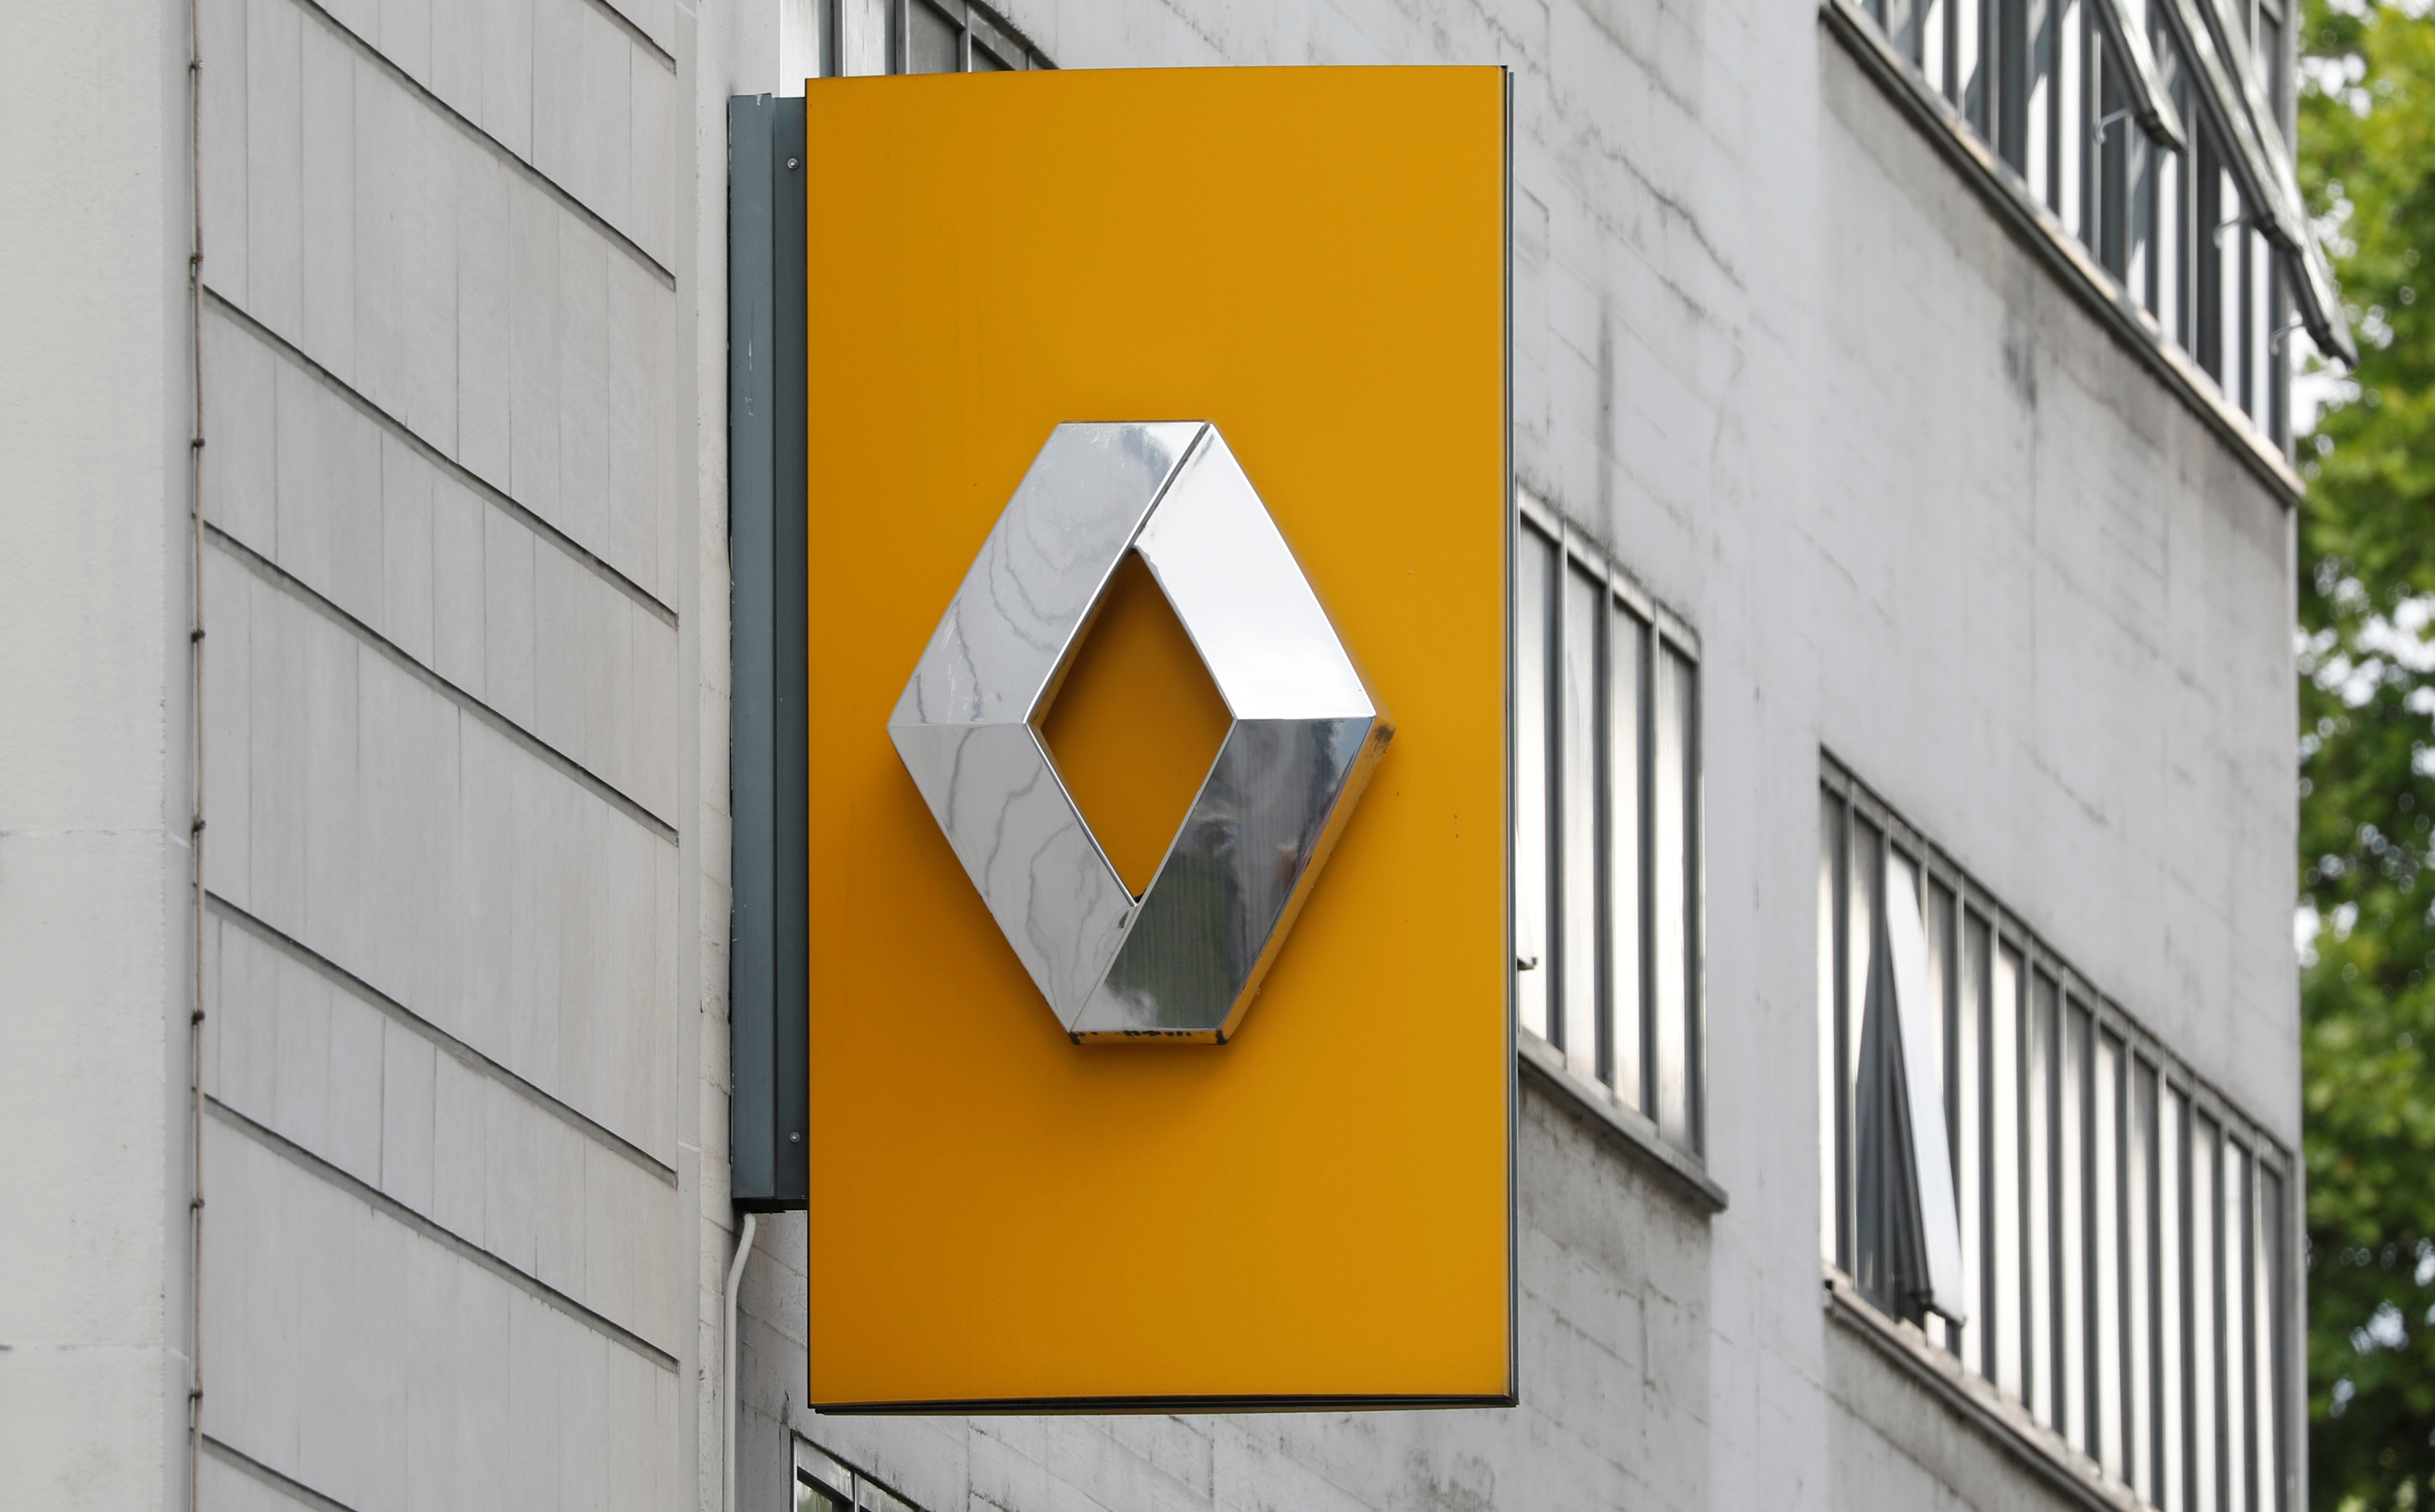 Renault dealership in Paris